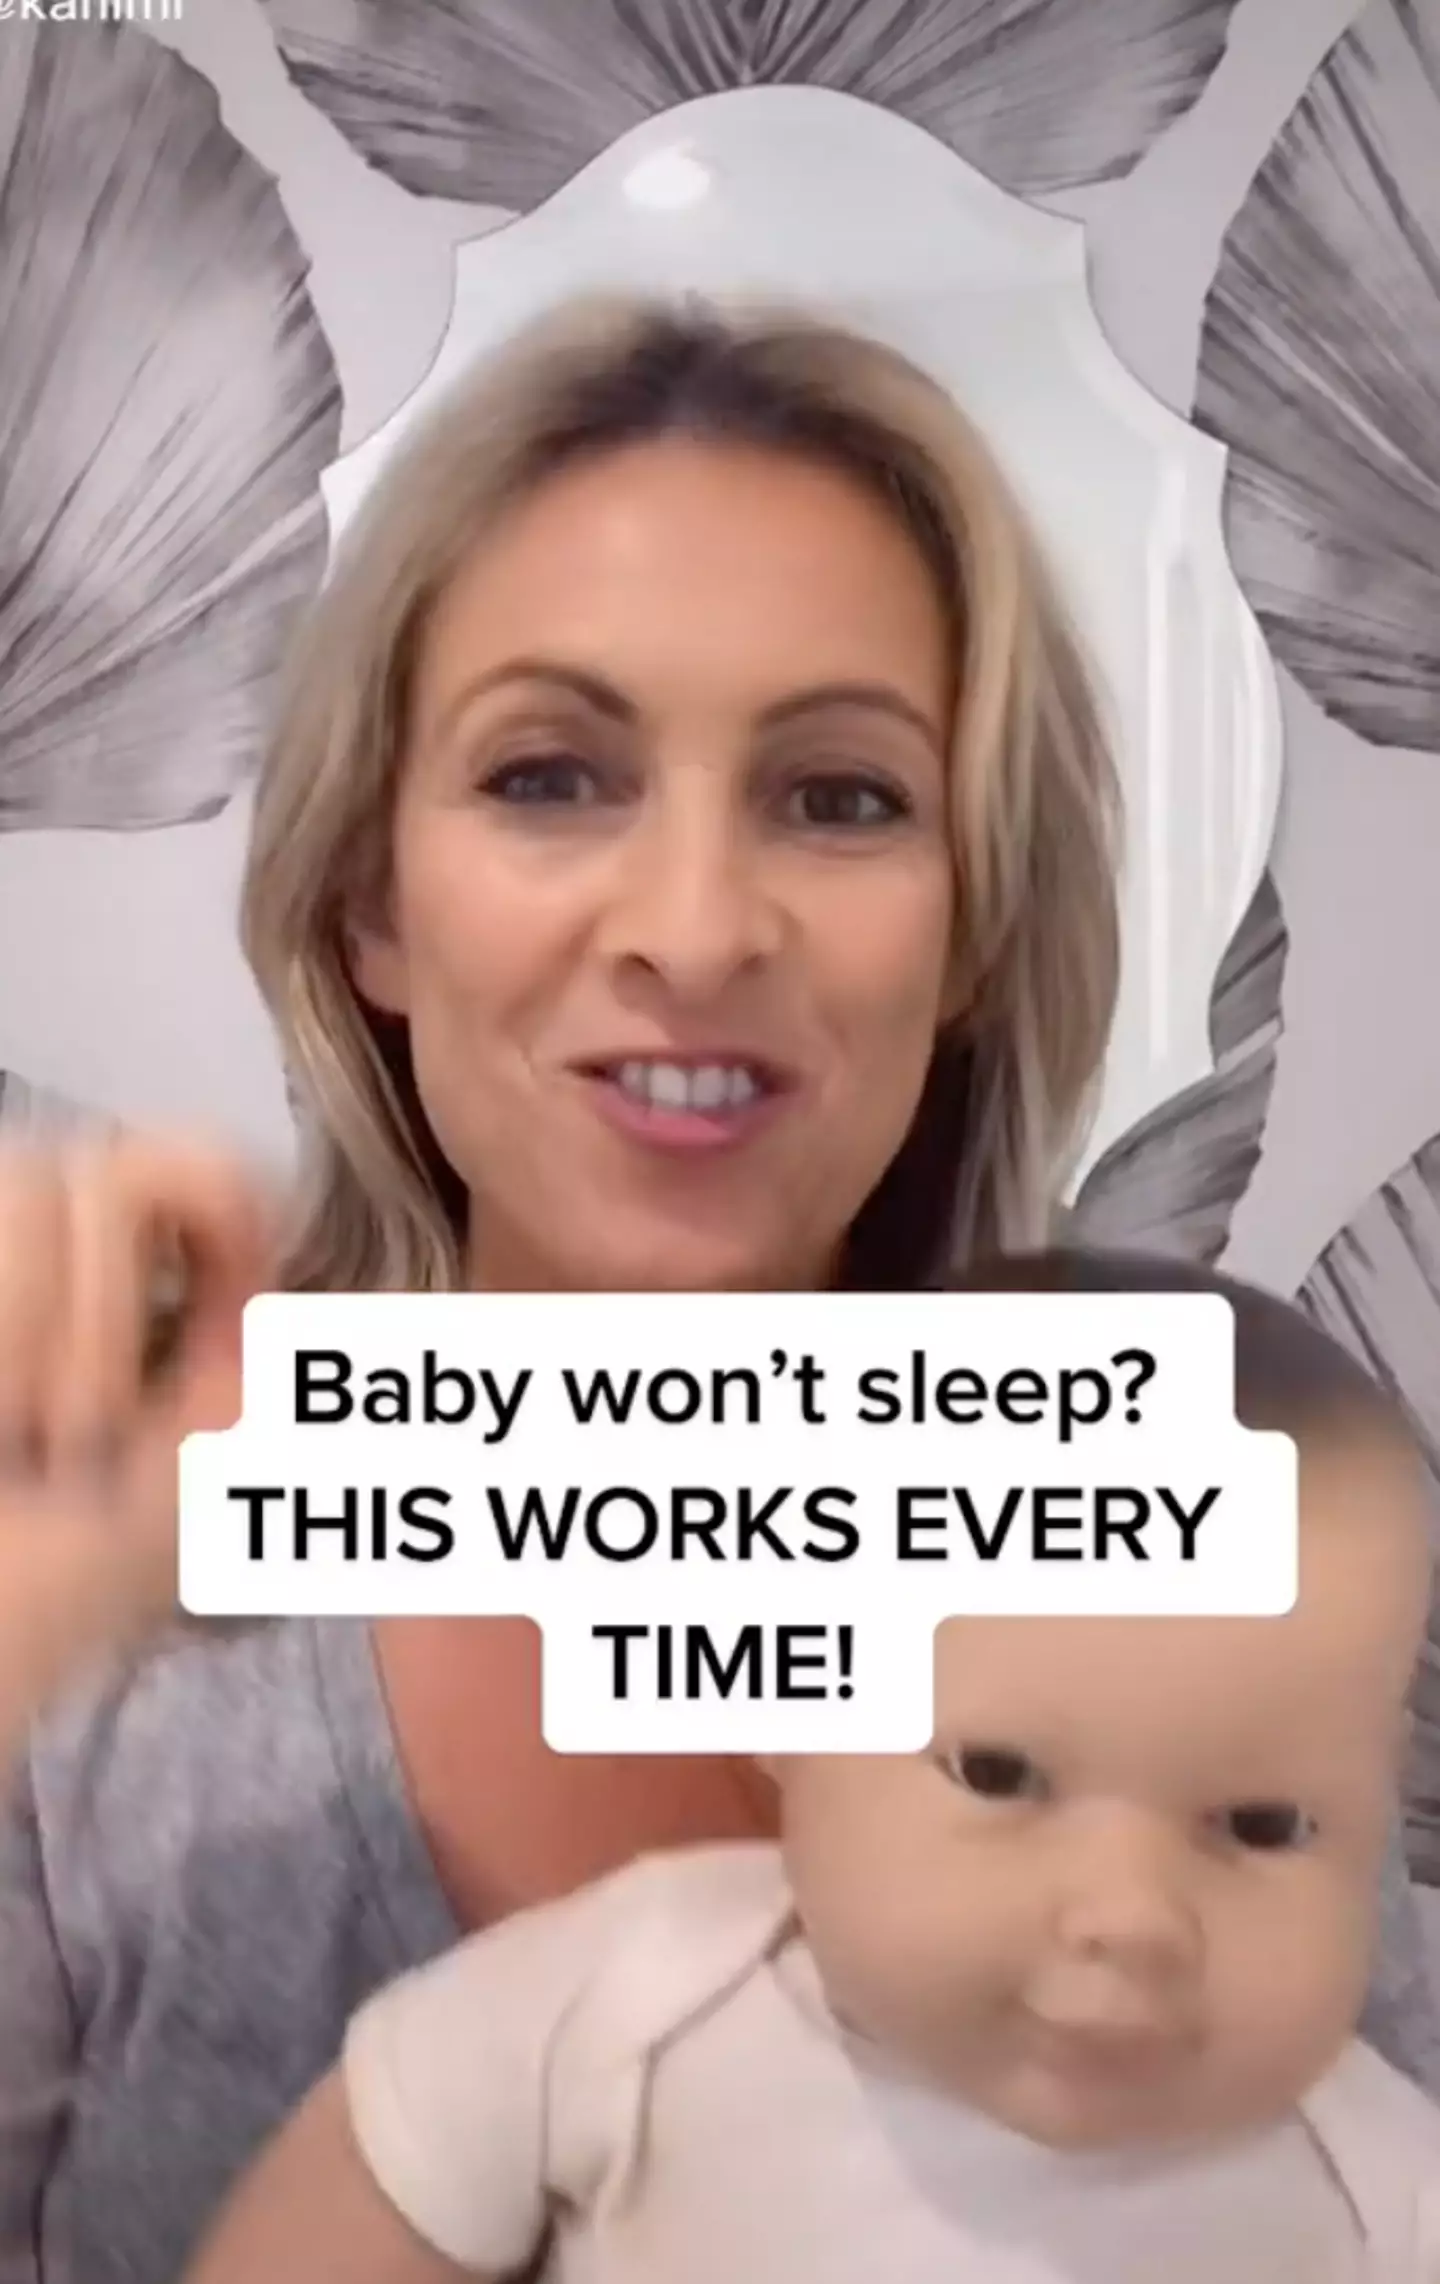 Elina says it helps babies sleep (